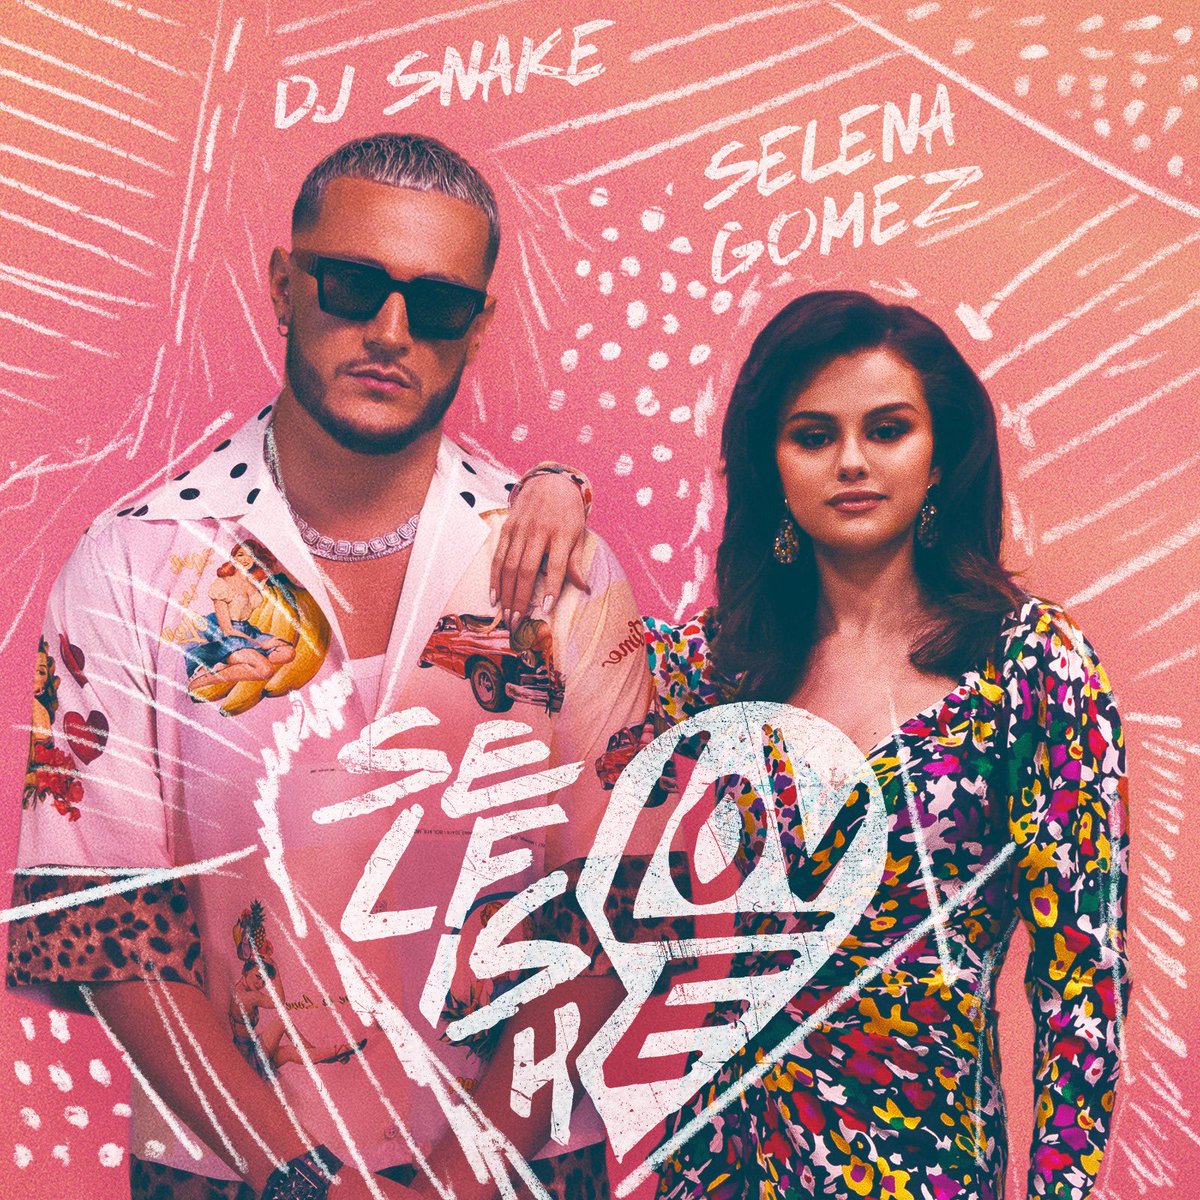 Istoria se repetă. Selena Gomez și DJ Snake colaborează din nou. Ai ascultat ”Selfish love”?